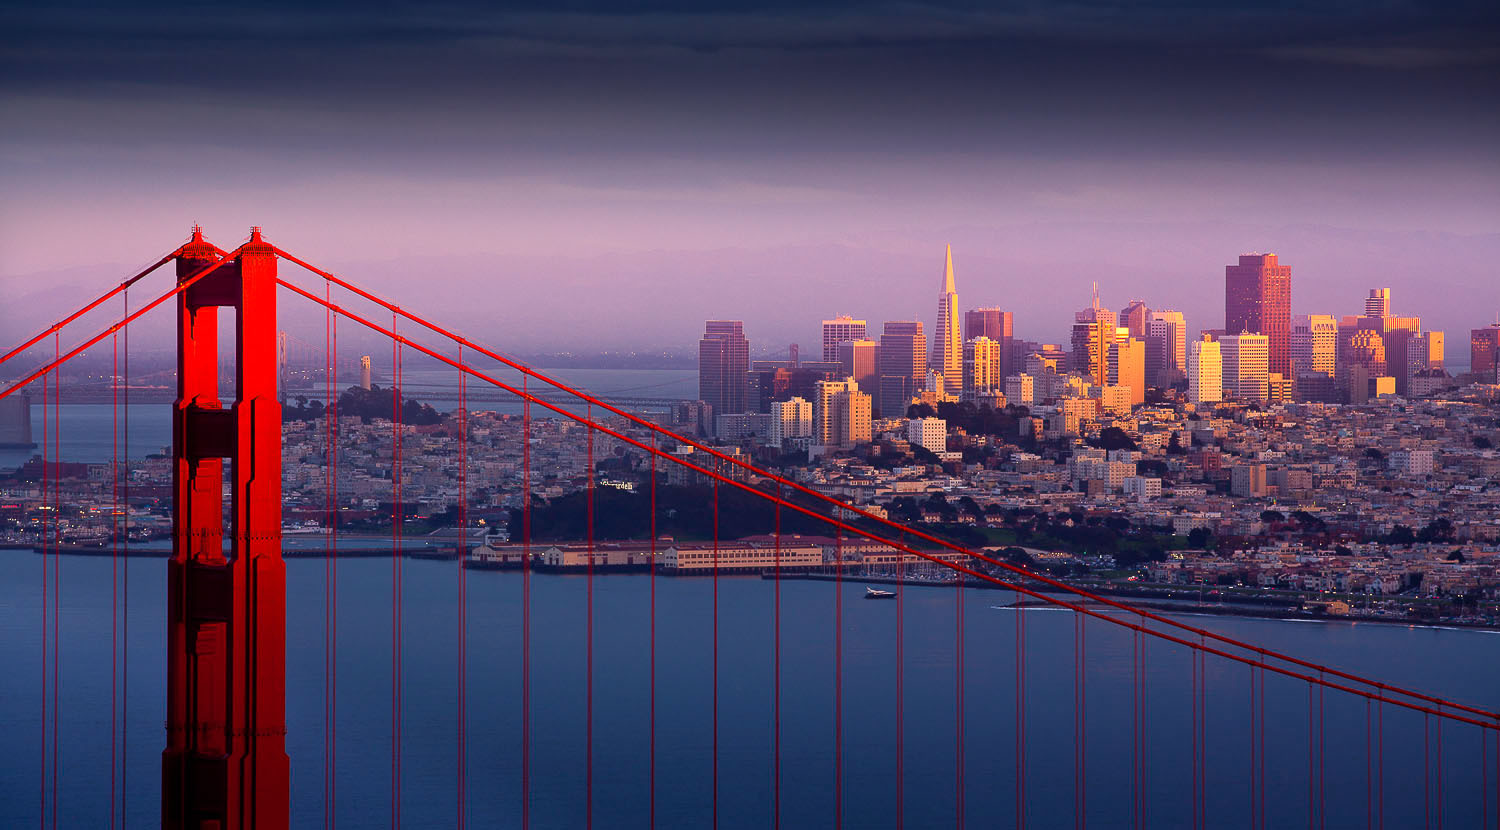 San Francisco, CA, USA - Golden Gate